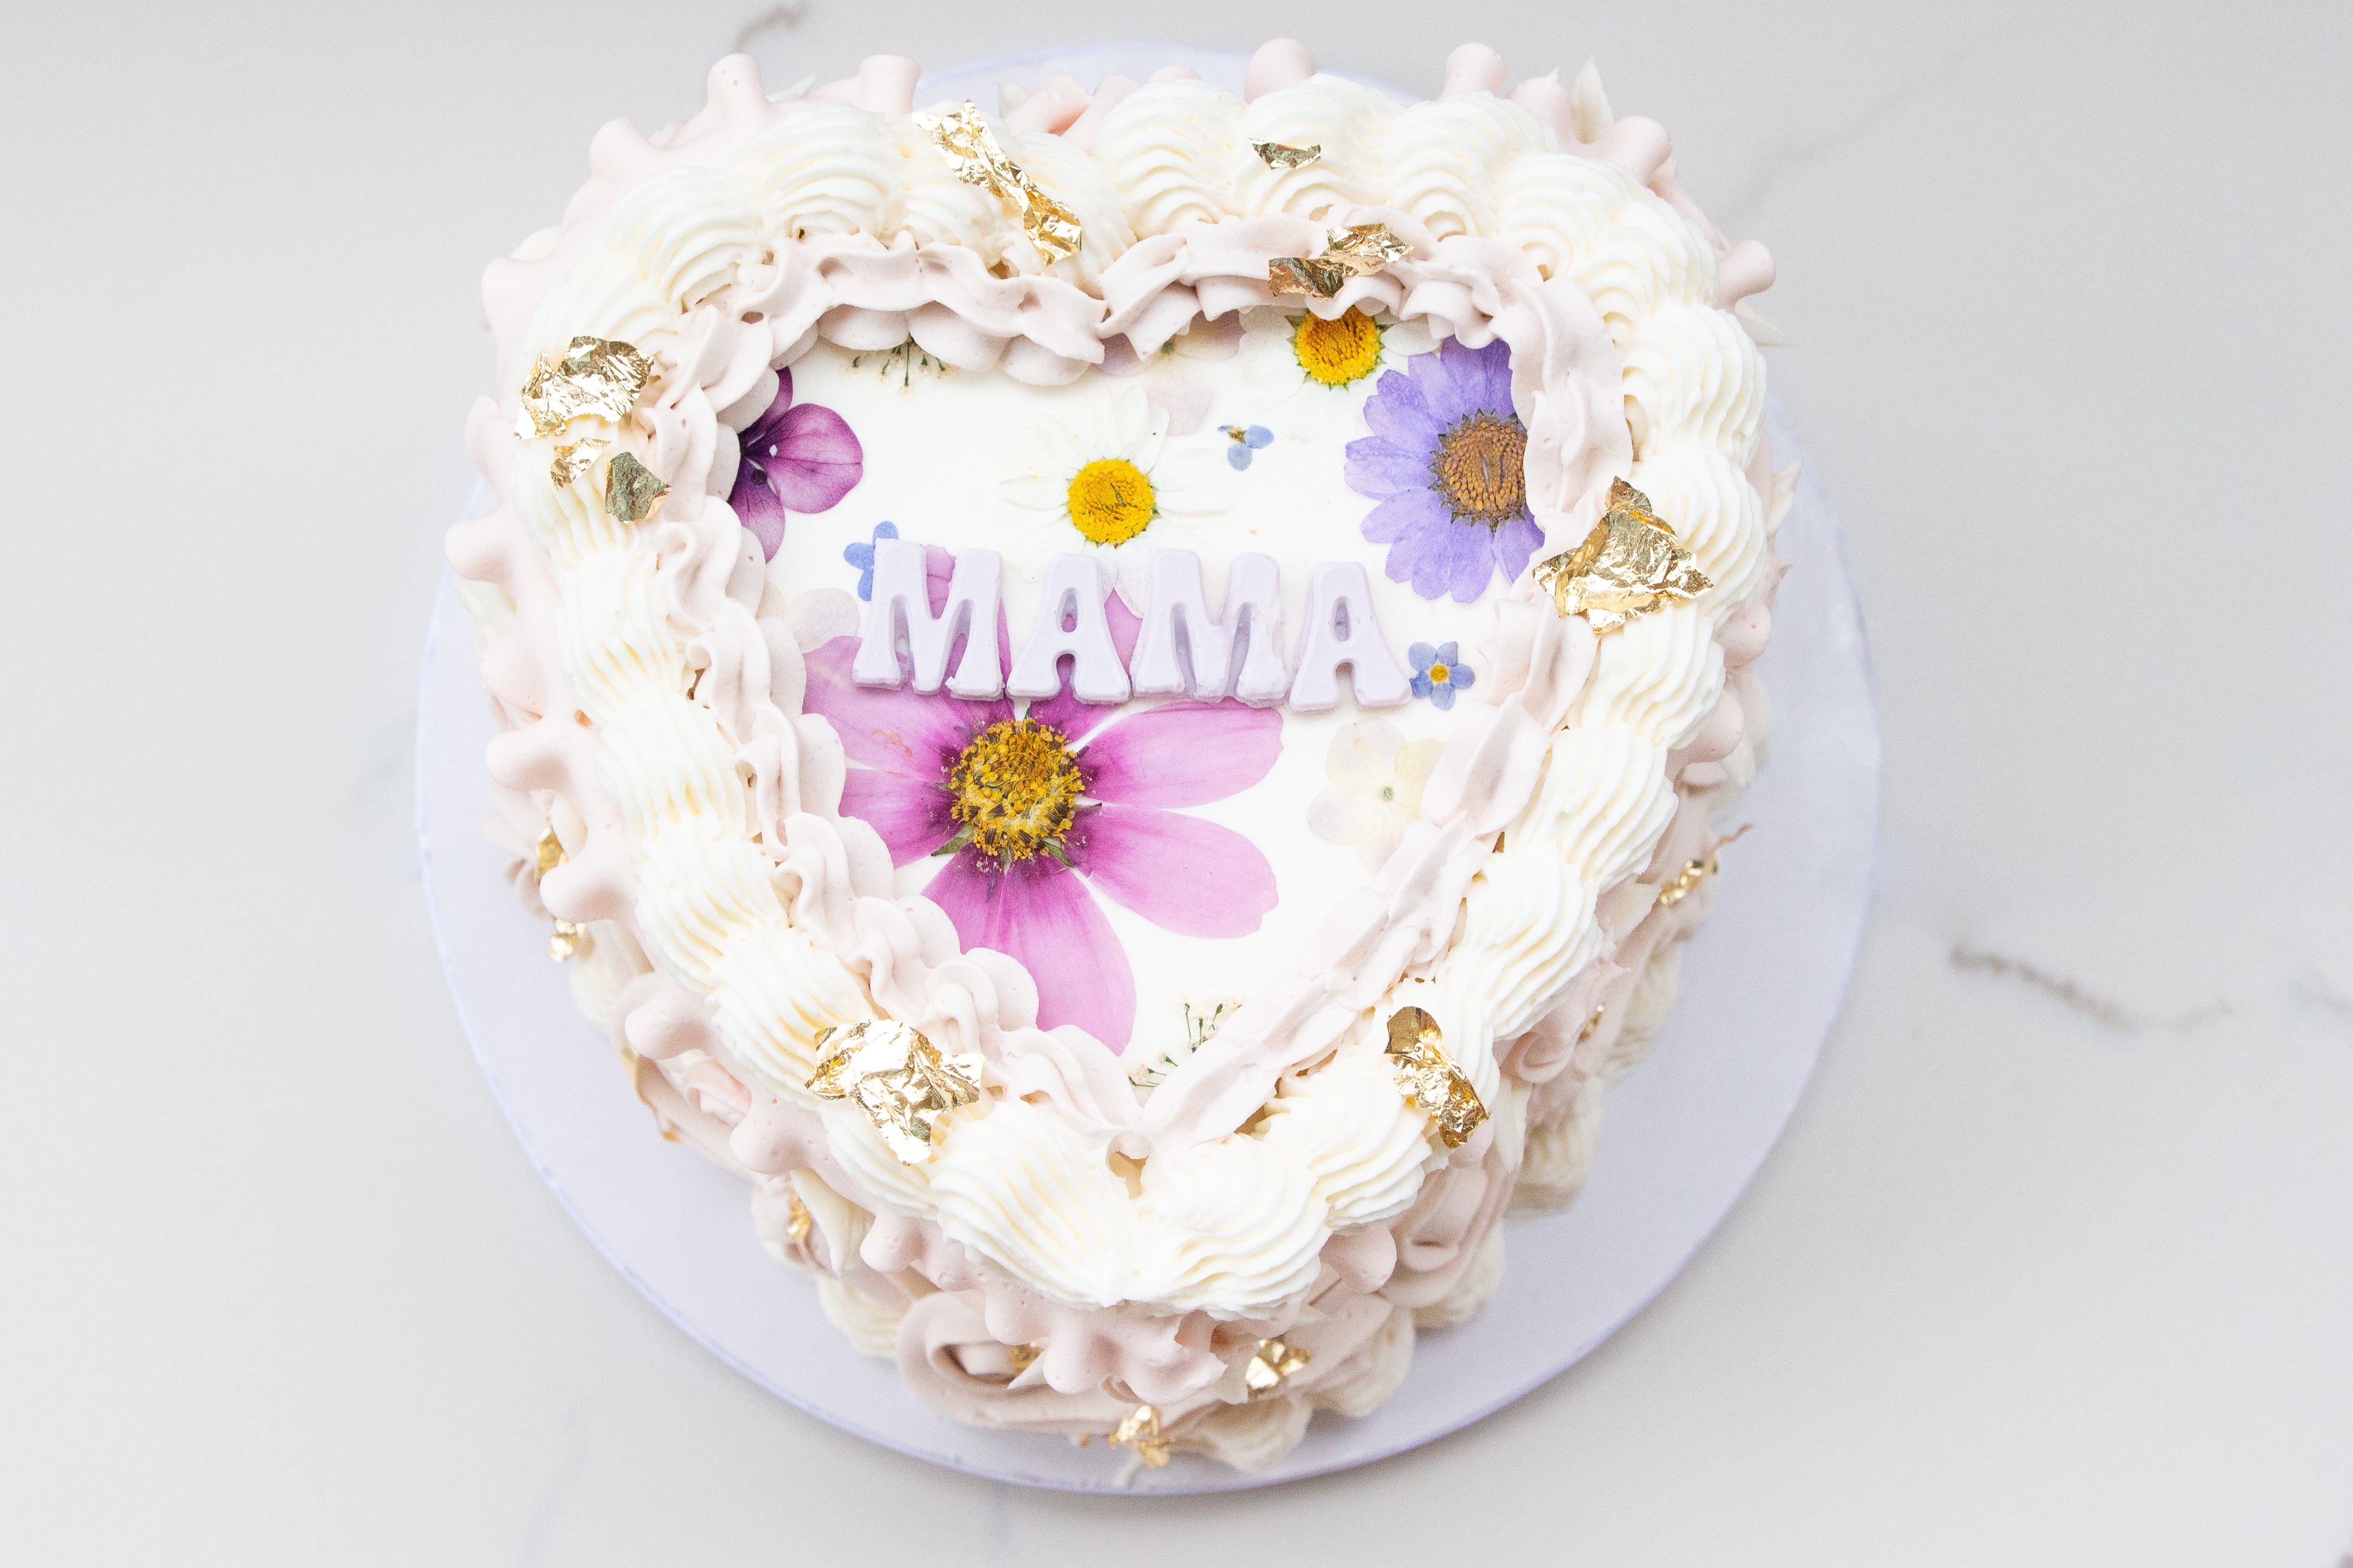 Mama cake - Decorated Cake by Iva - CakesDecor